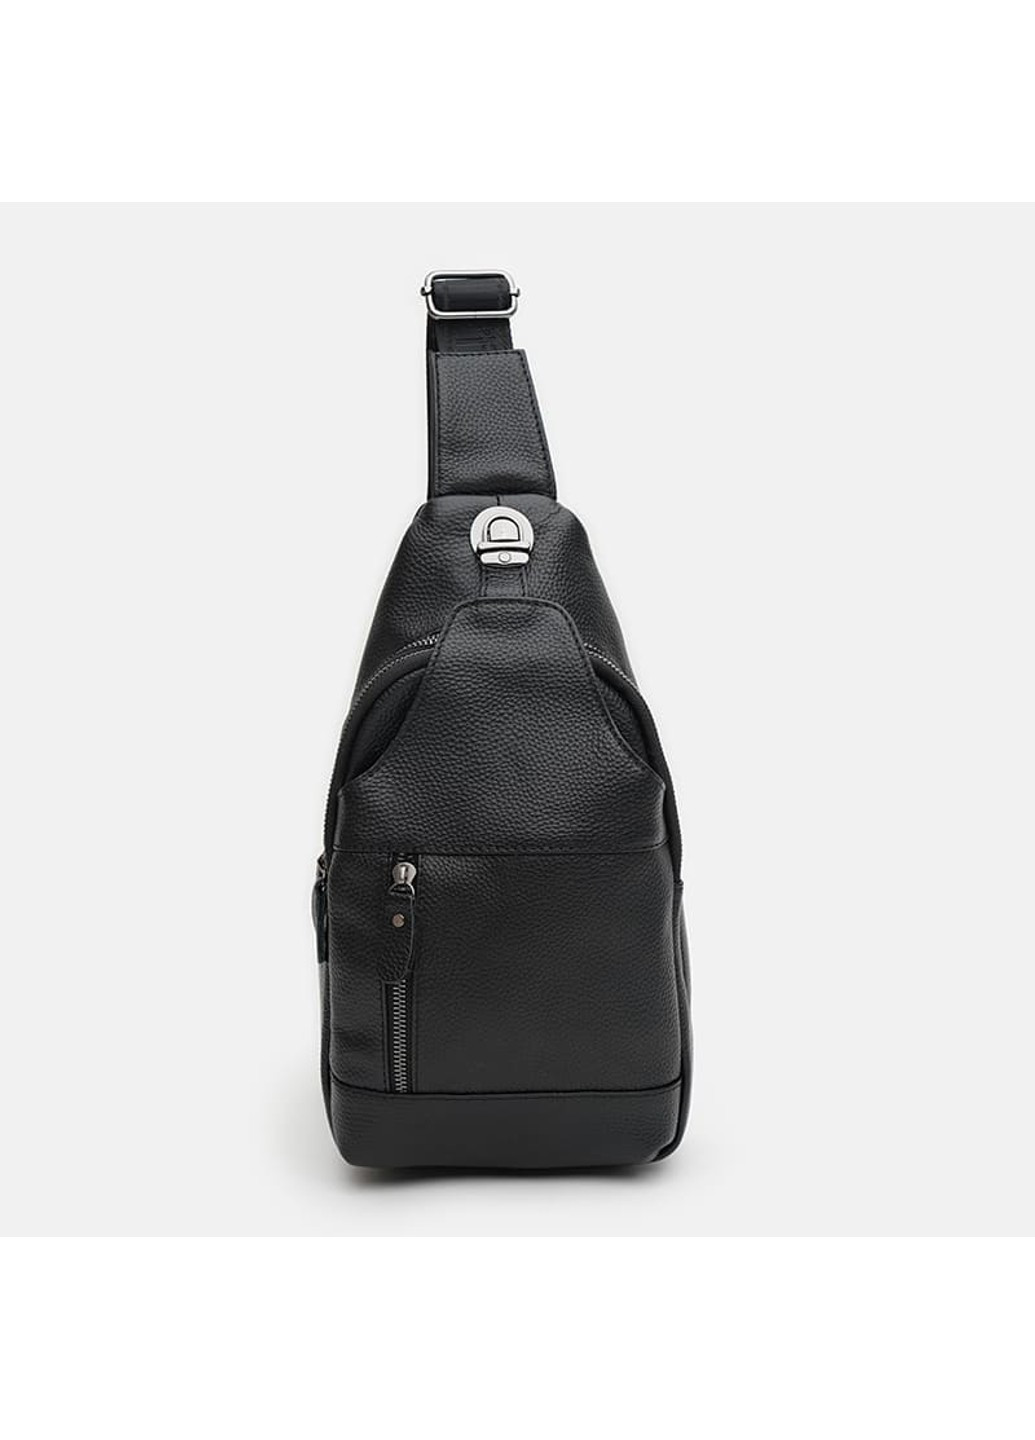 Мужской кожаный рюкзак через плечо K11802bl-black Keizer (266144039)